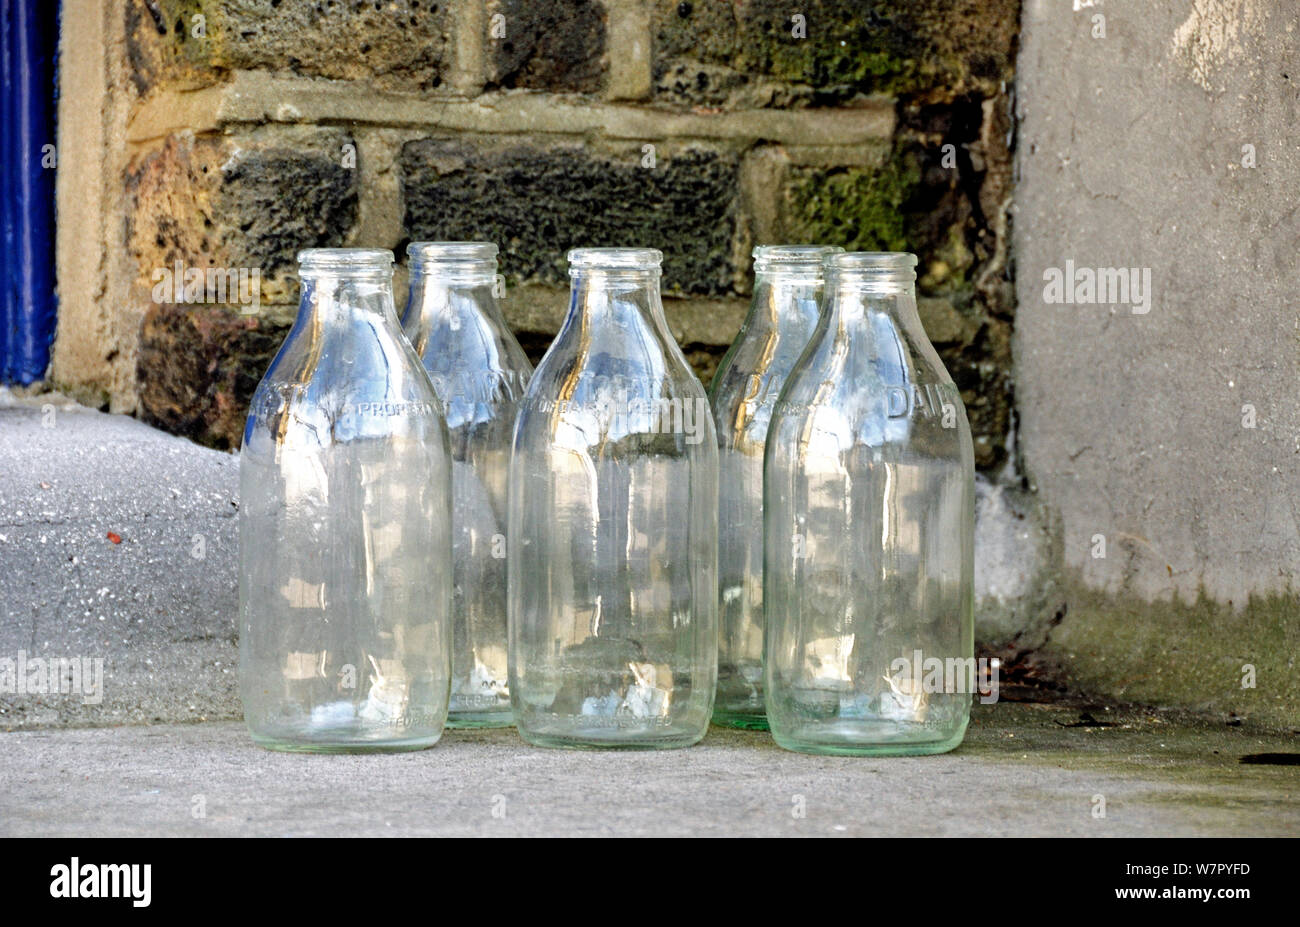 Cinq bouteilles de lait en verre vide sur le démarchage, Highbury, Département du Nord-Ouest Angleterre UK Banque D'Images